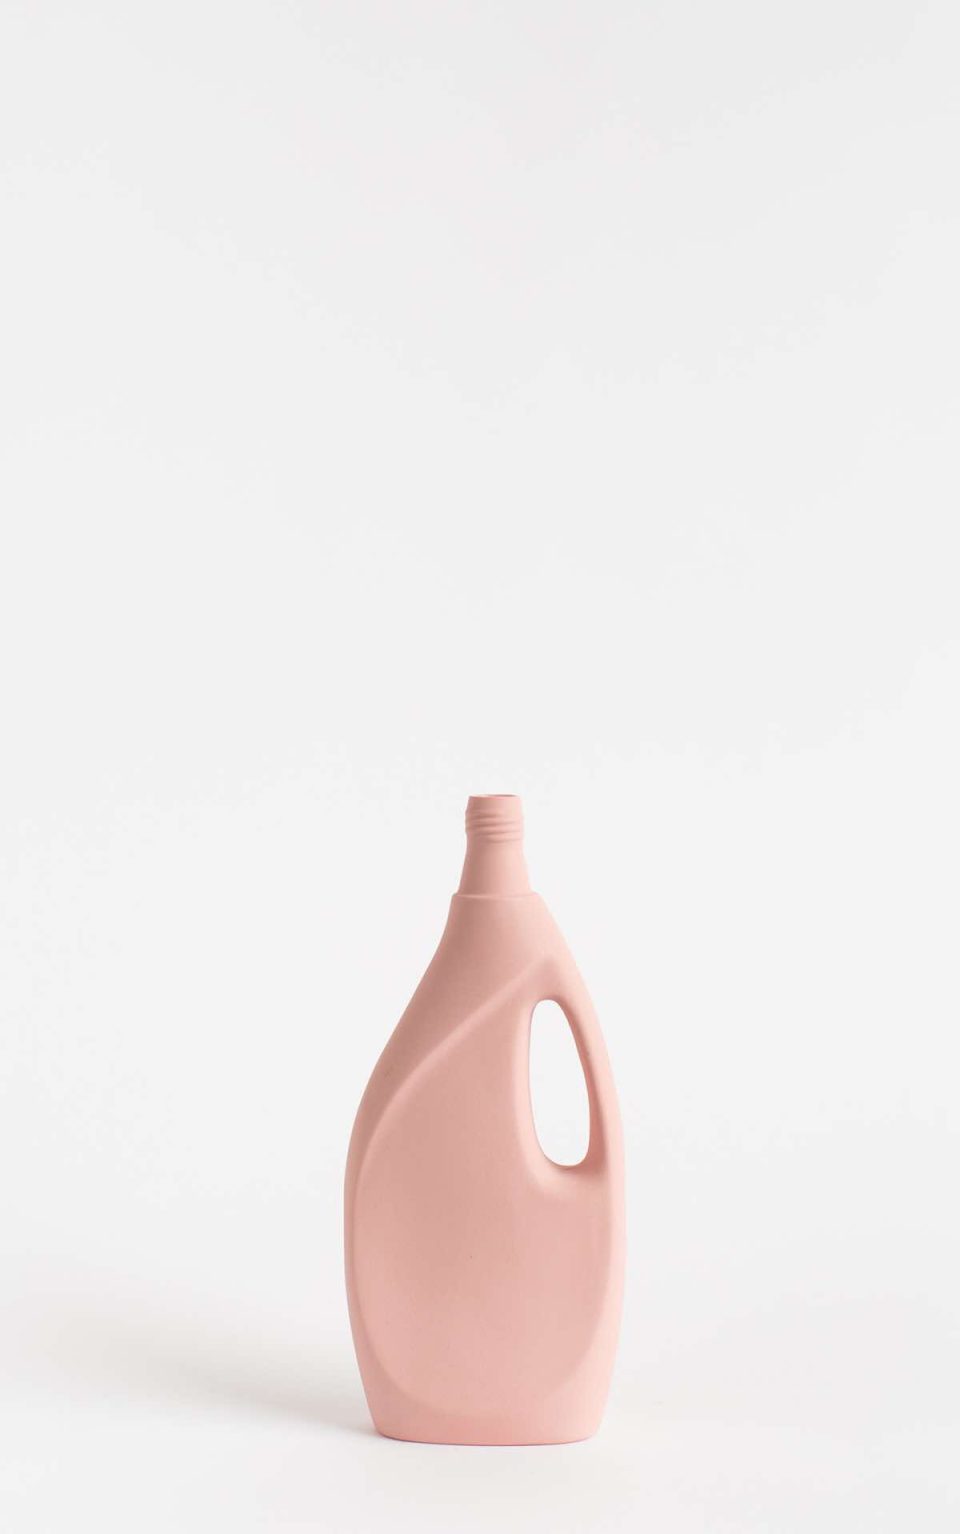 Prikazana je vaza brenda foekje fleur u svijetlo ružićastoj boji ispred sive pozadine. Vaza ima oblik kontejnera za sredstvo za pranje suđa.